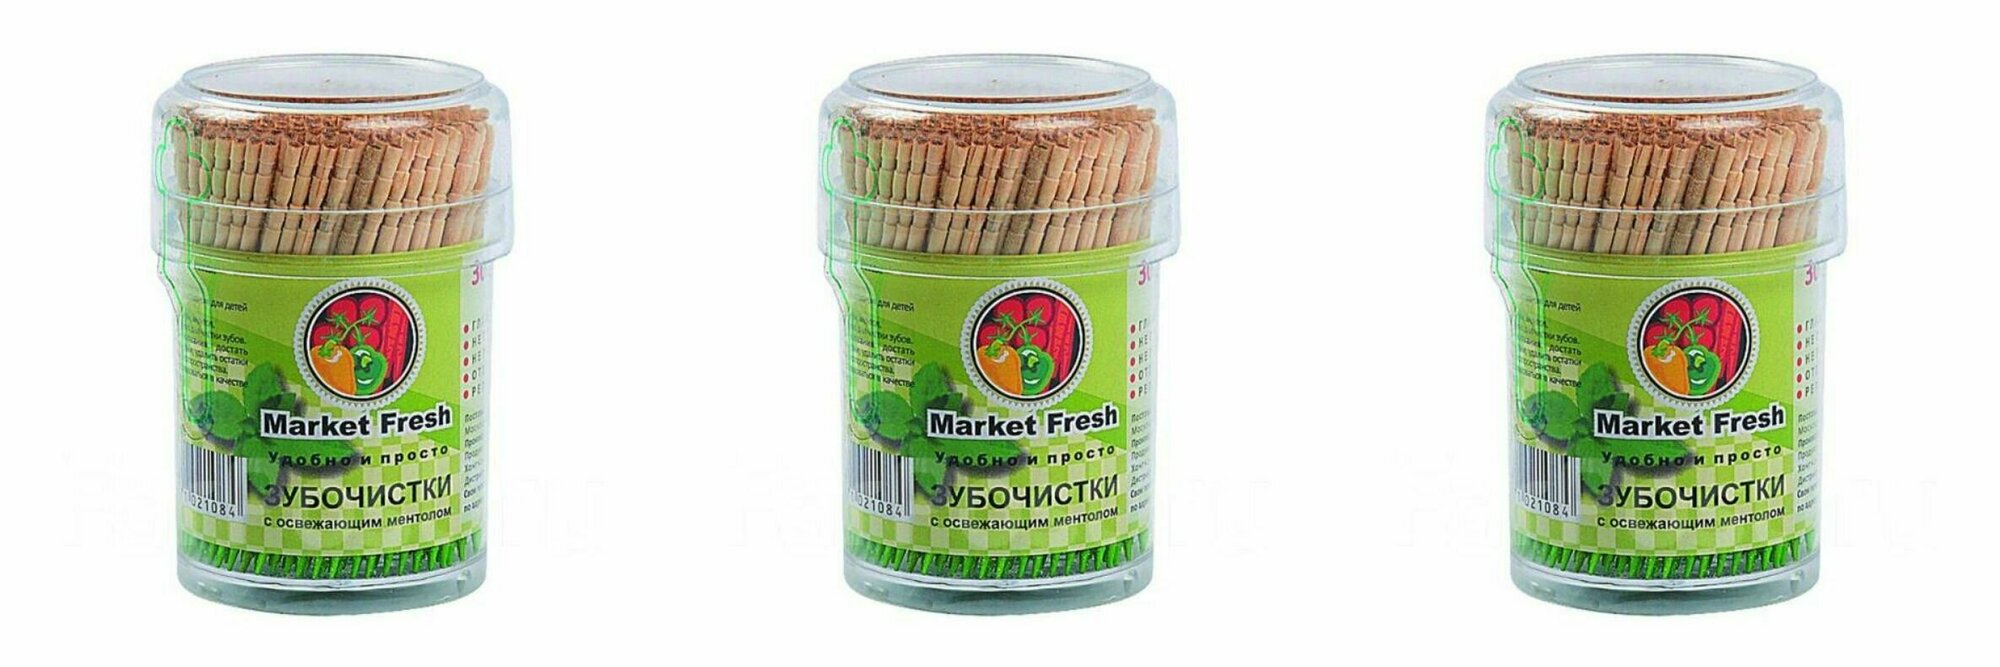 Market Fresh Зубочистки деревянные с освежающим ментолом, 300 шт, 3 уп /